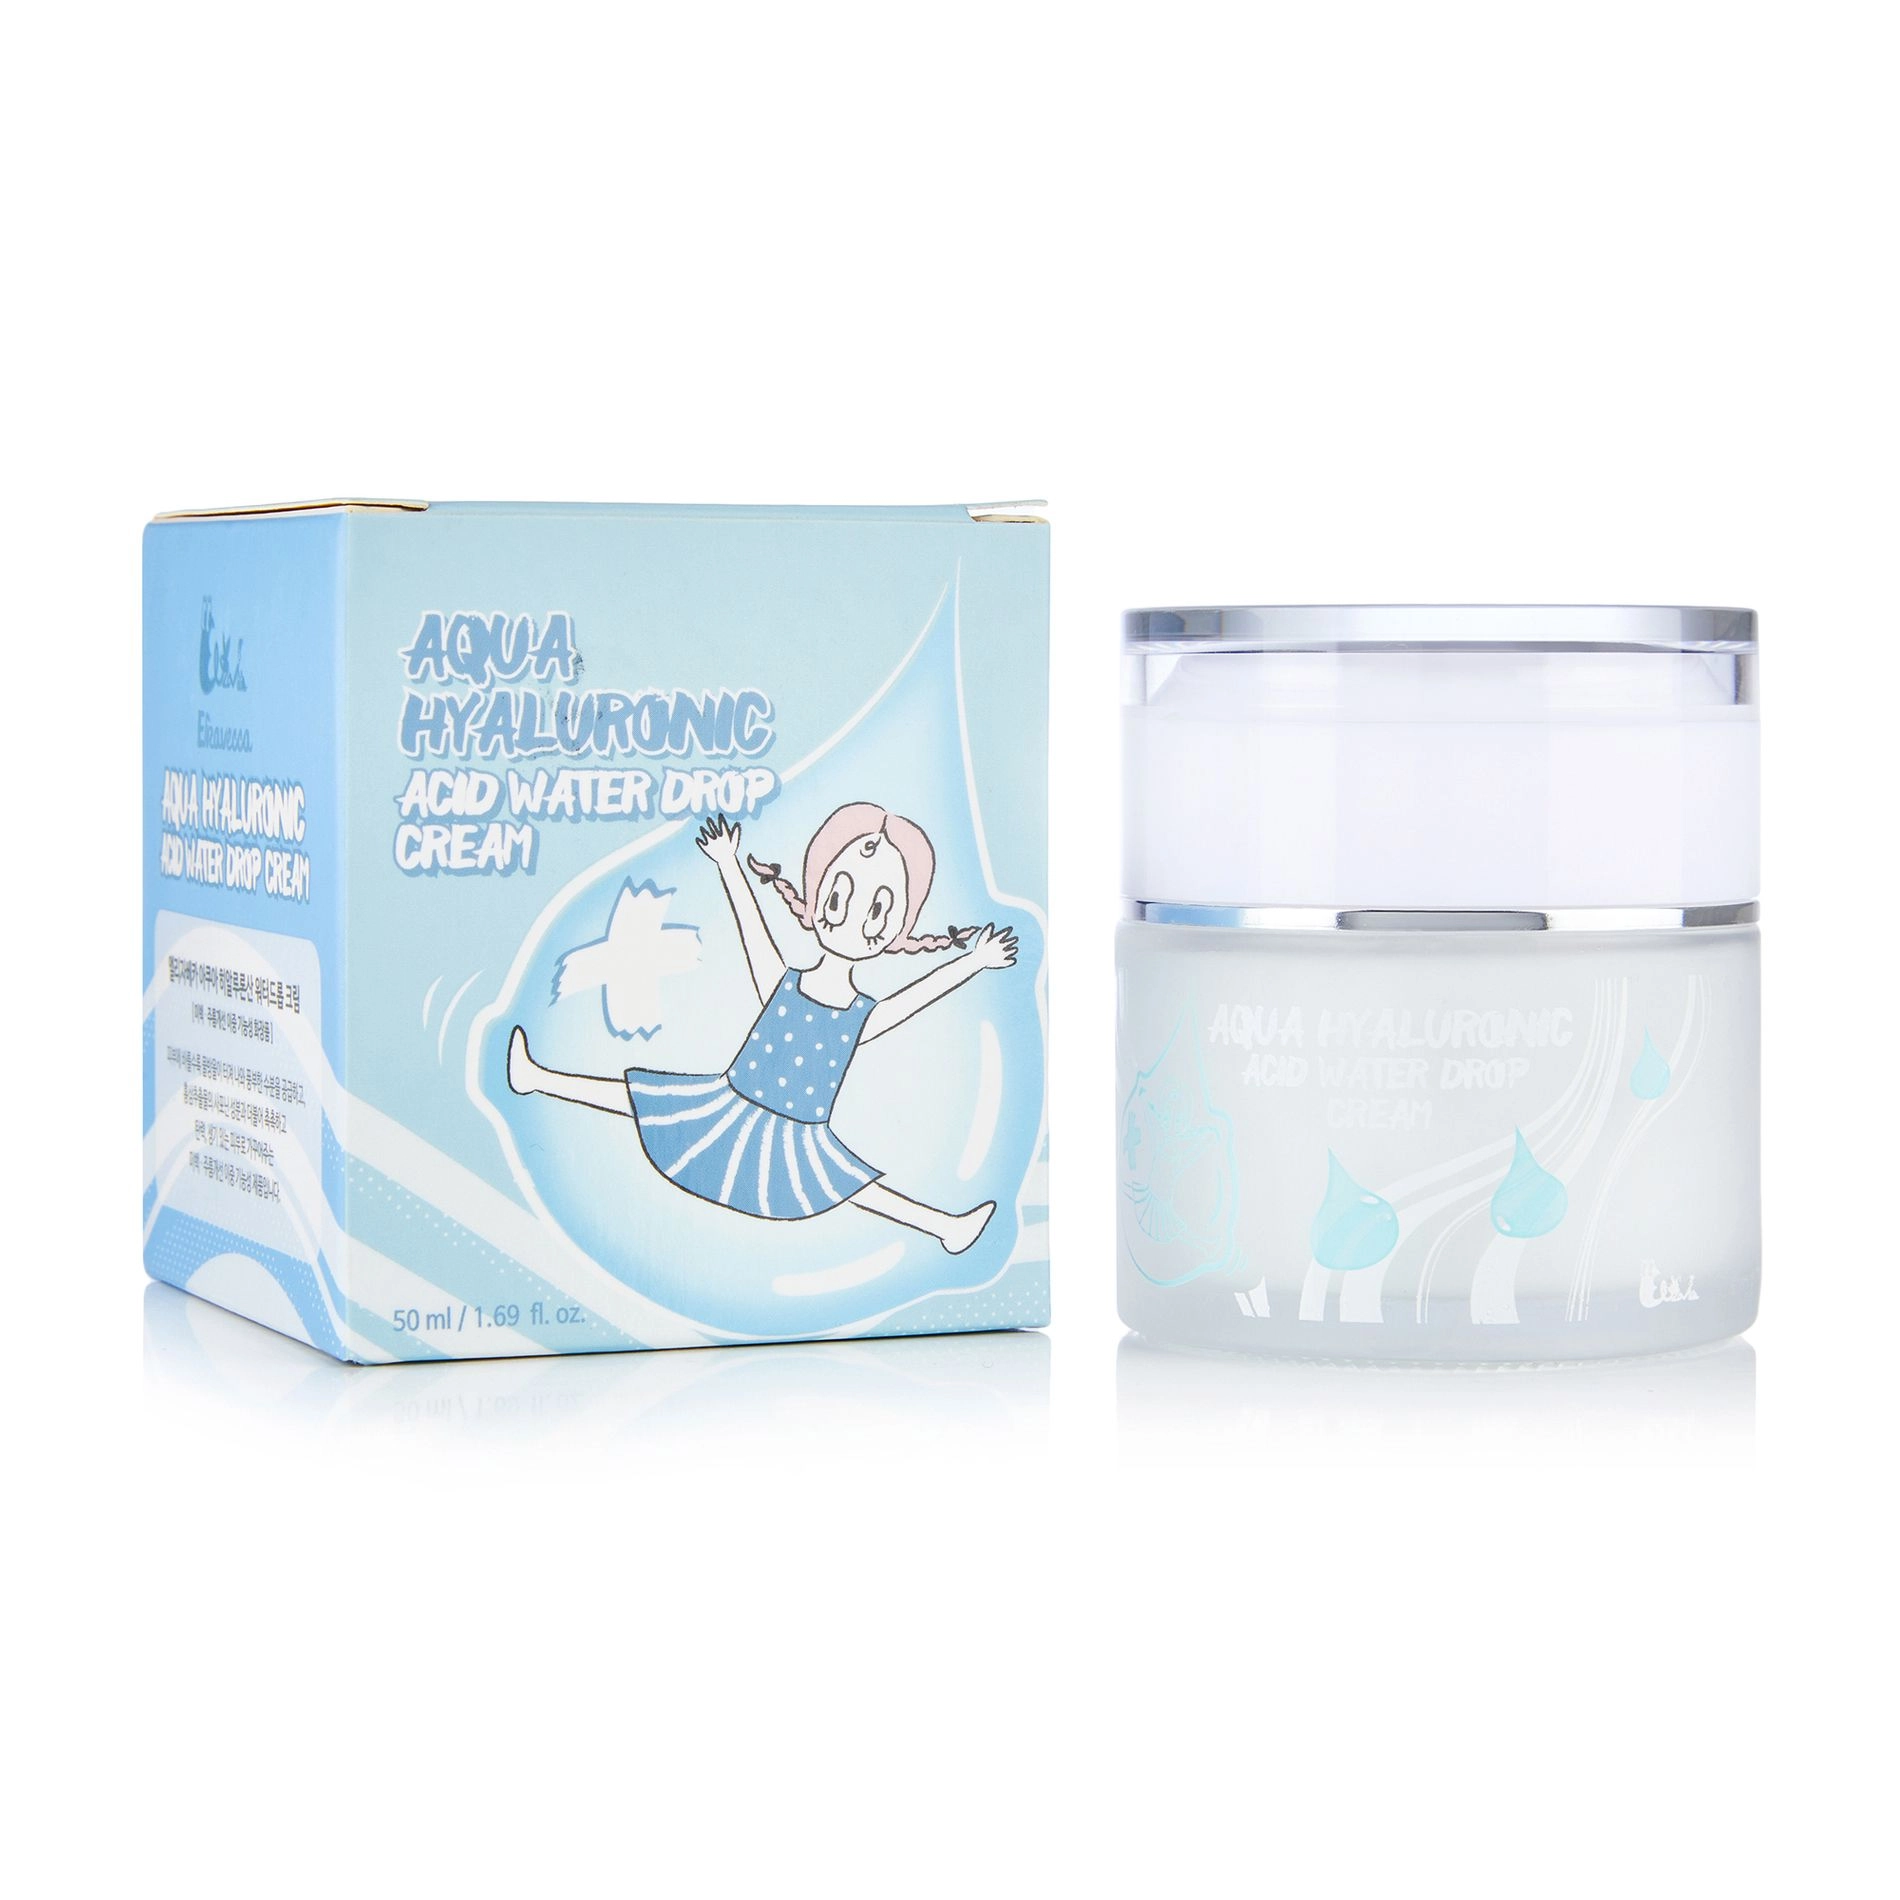 Крем для лица увлажняющий гиалуроновый - Elizavecca Face Care Aqua Hyaluronic Acid Water Drop Cream, 50 мл - фото N10